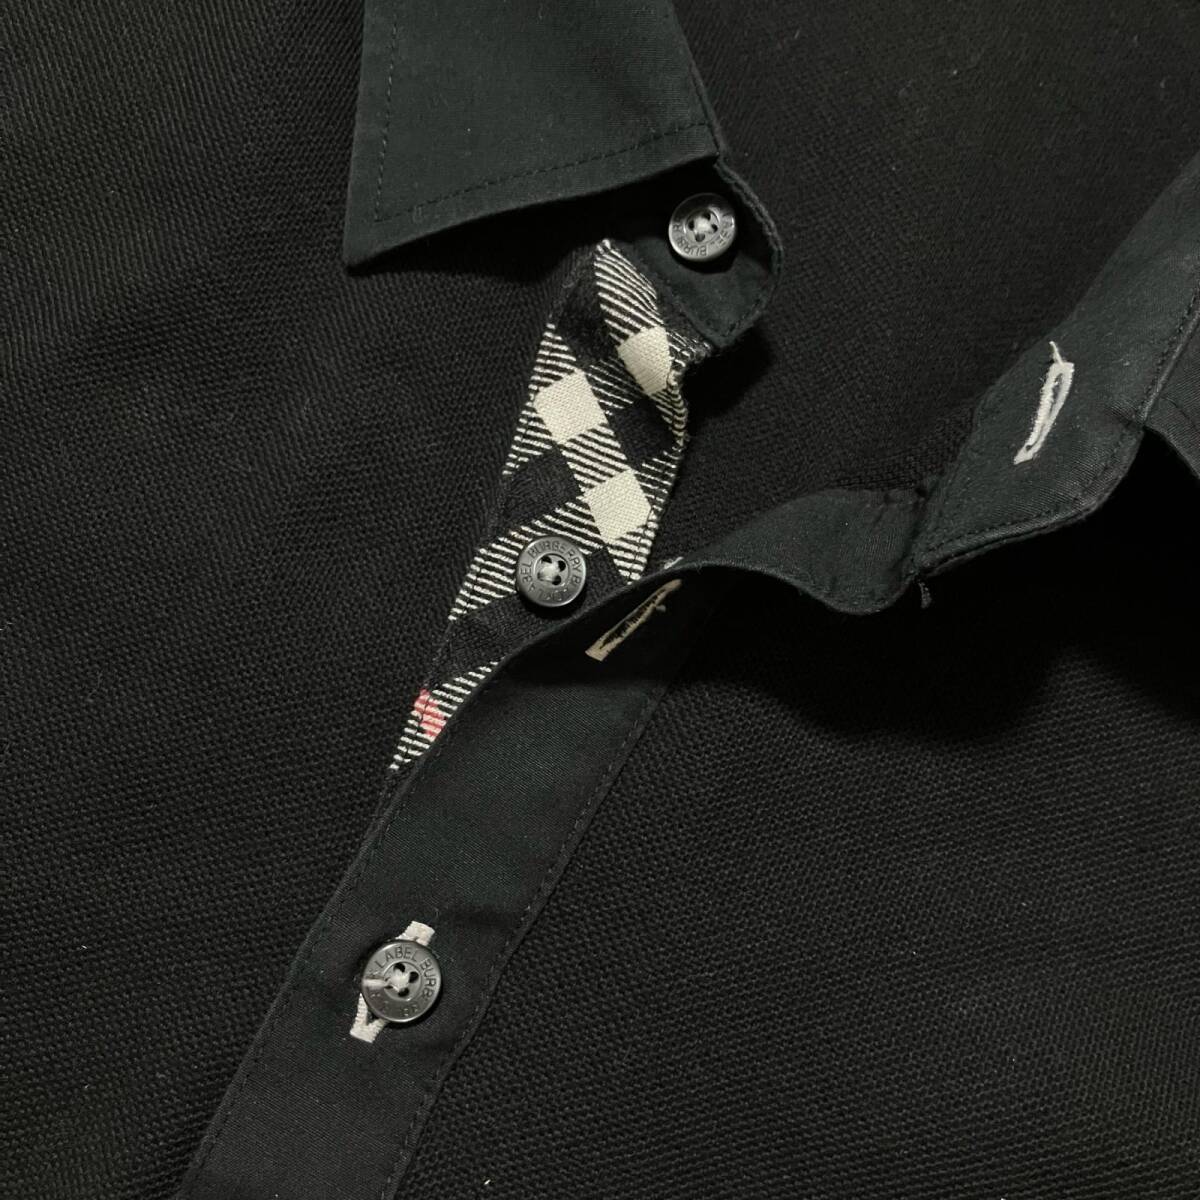 0 бесплатная доставка BURBERRY Burberry рубашка-поло короткий рукав чёрный серия хлопок 100% мужской размер 2